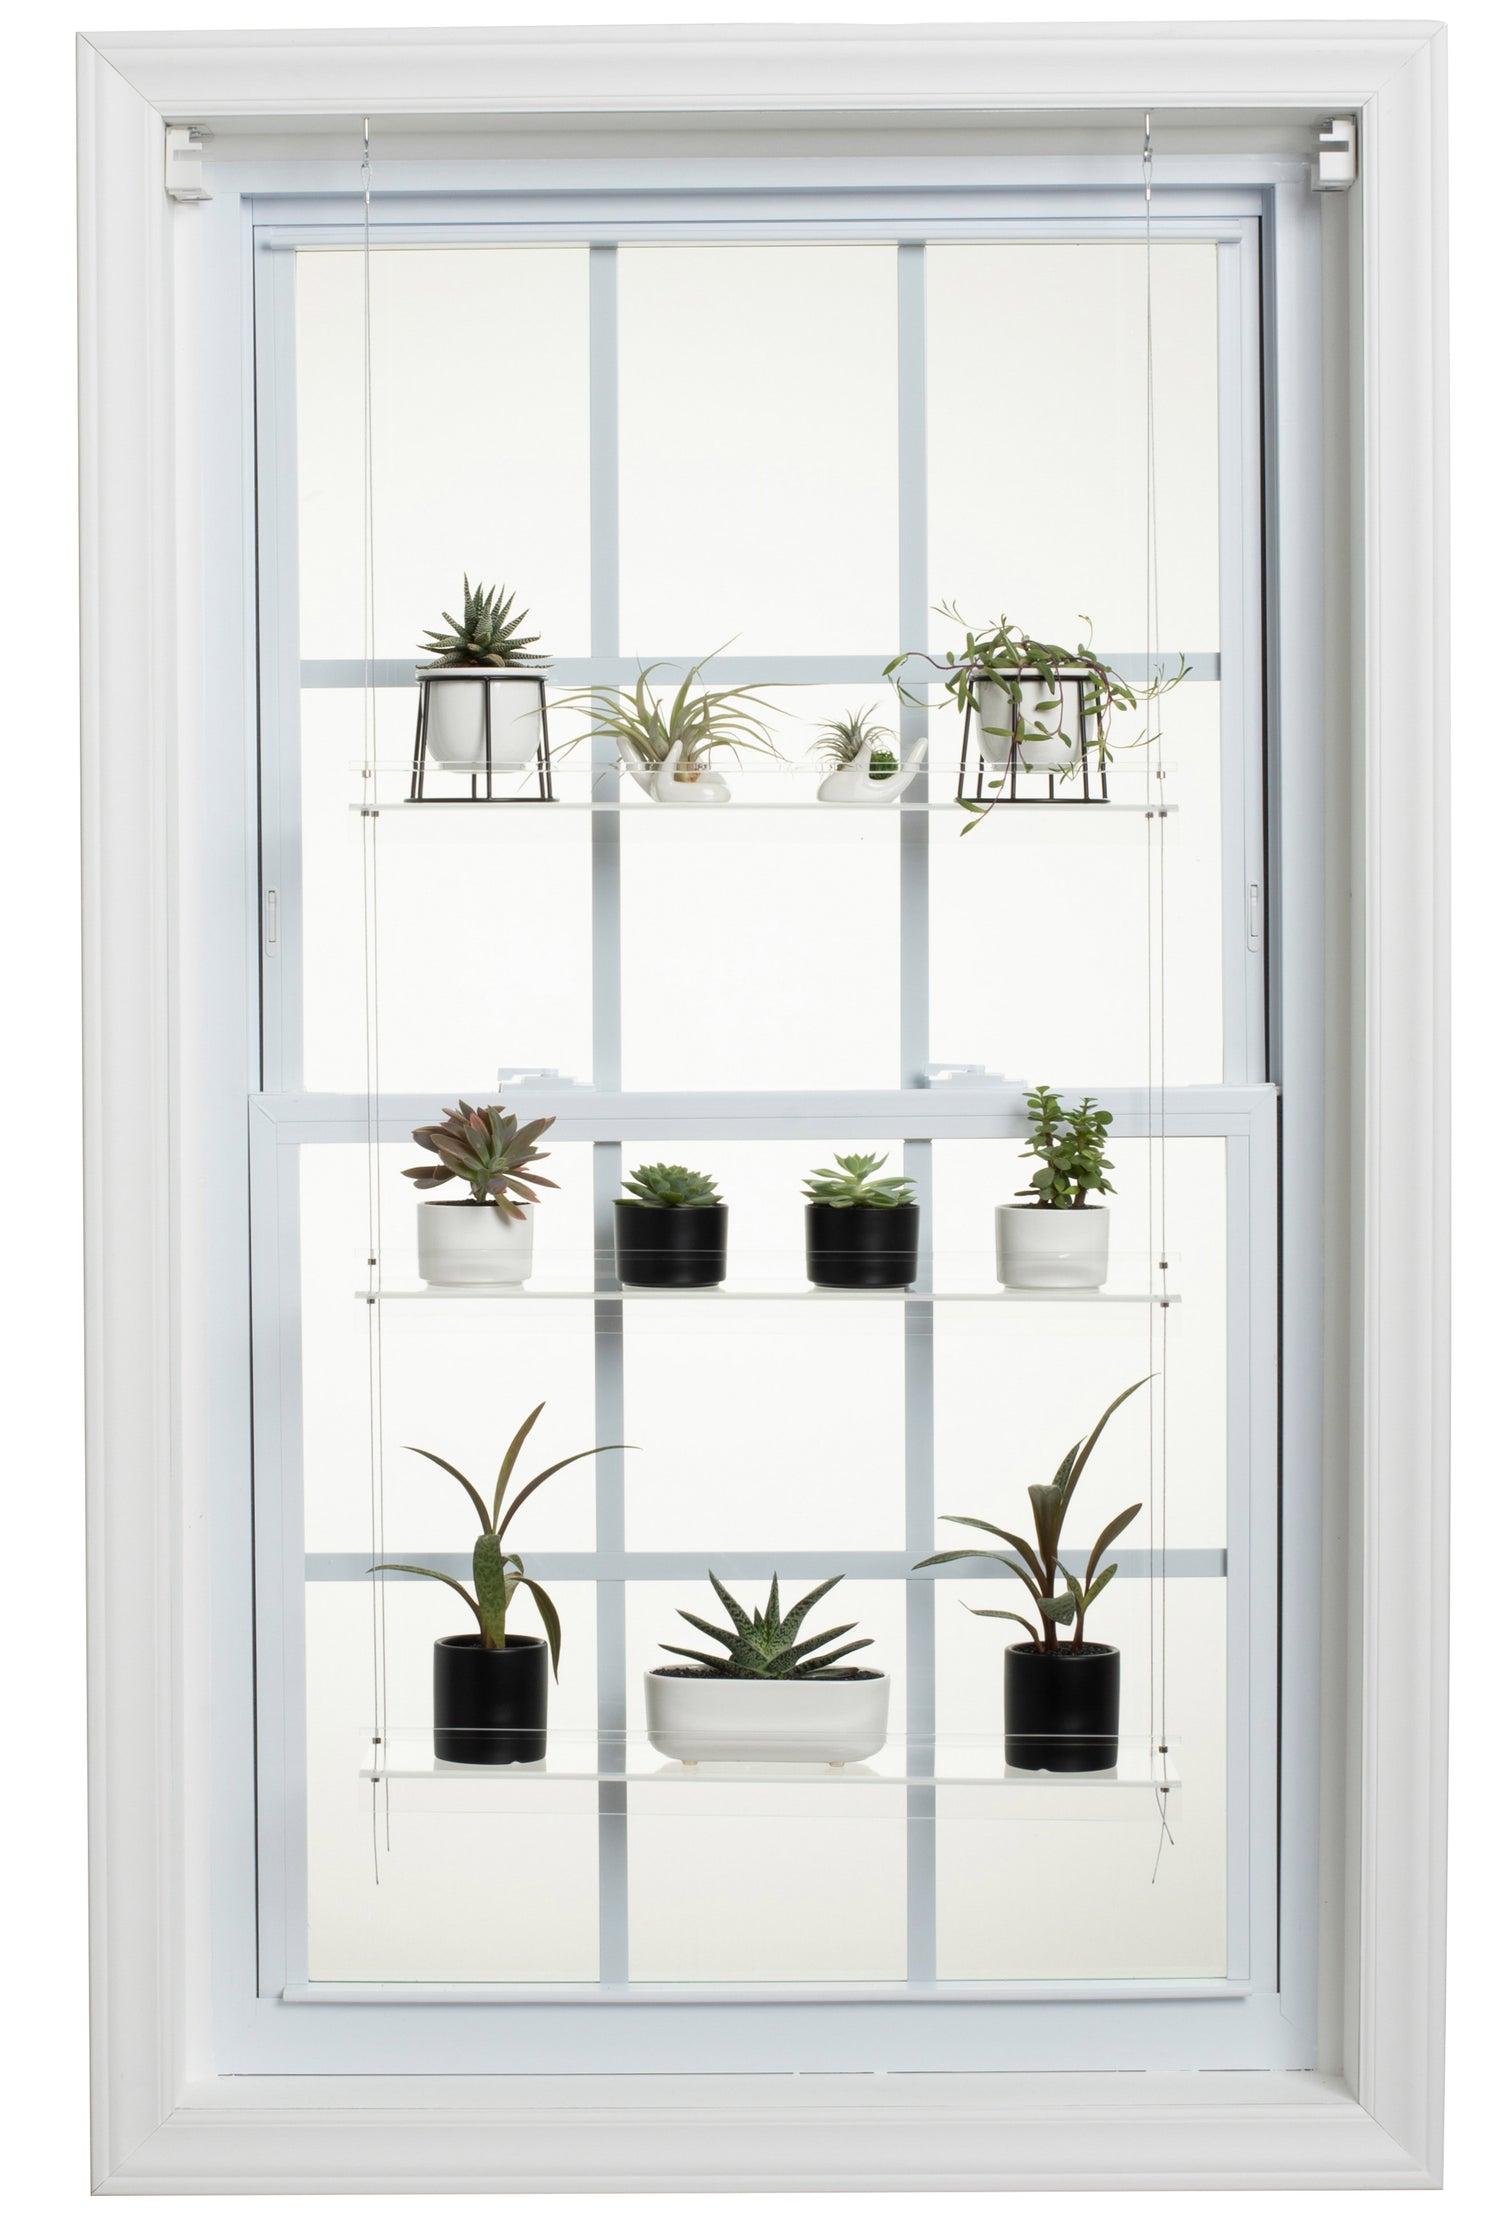 Hanging Window Plant Shelf  - 3 Shelf.